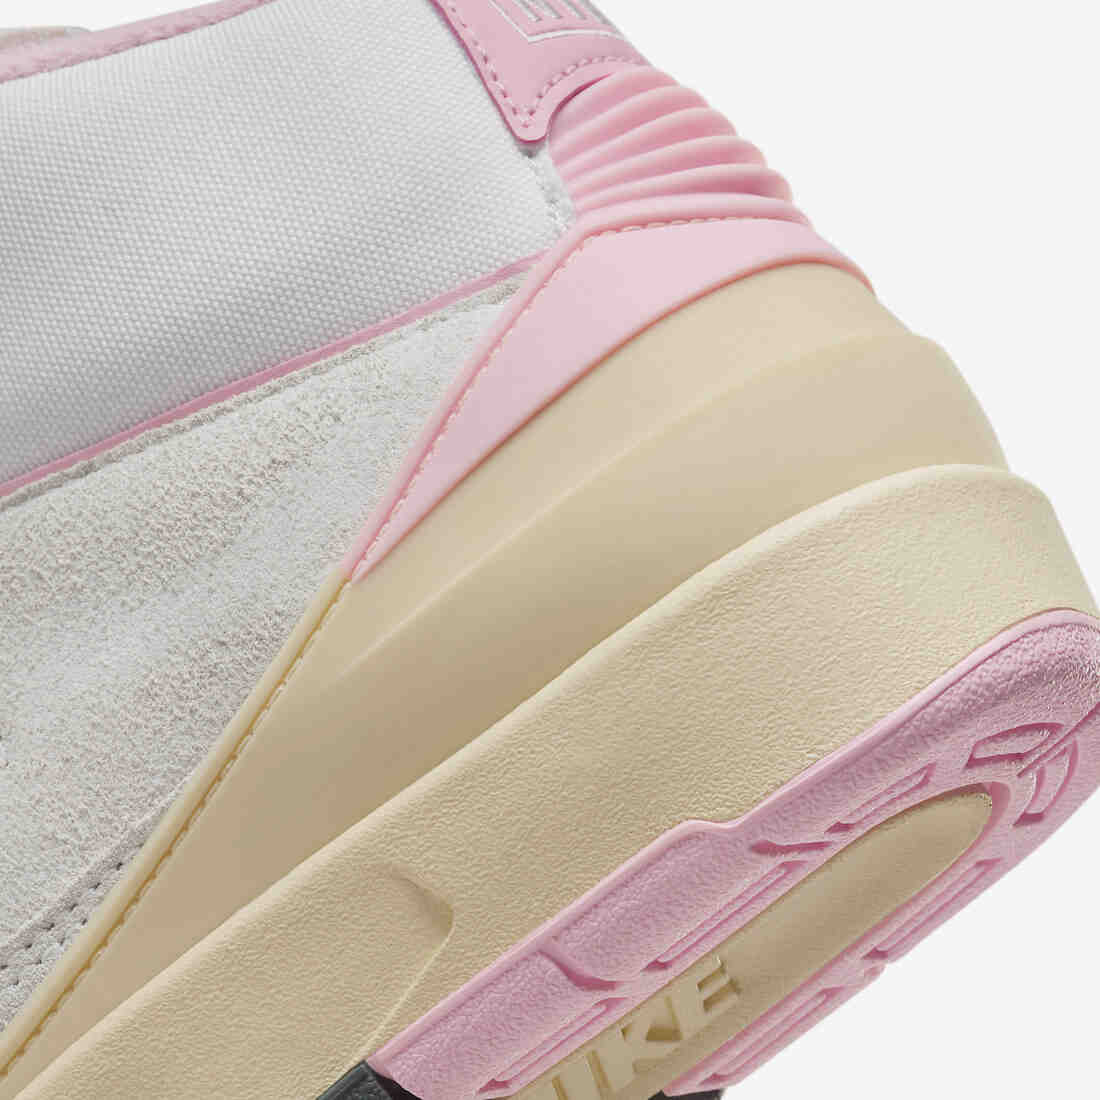 运动鞋, Jordan Brand, Jordan, Air Jordan 2 Soft Pink, Air Jordan 2, Air Jordan